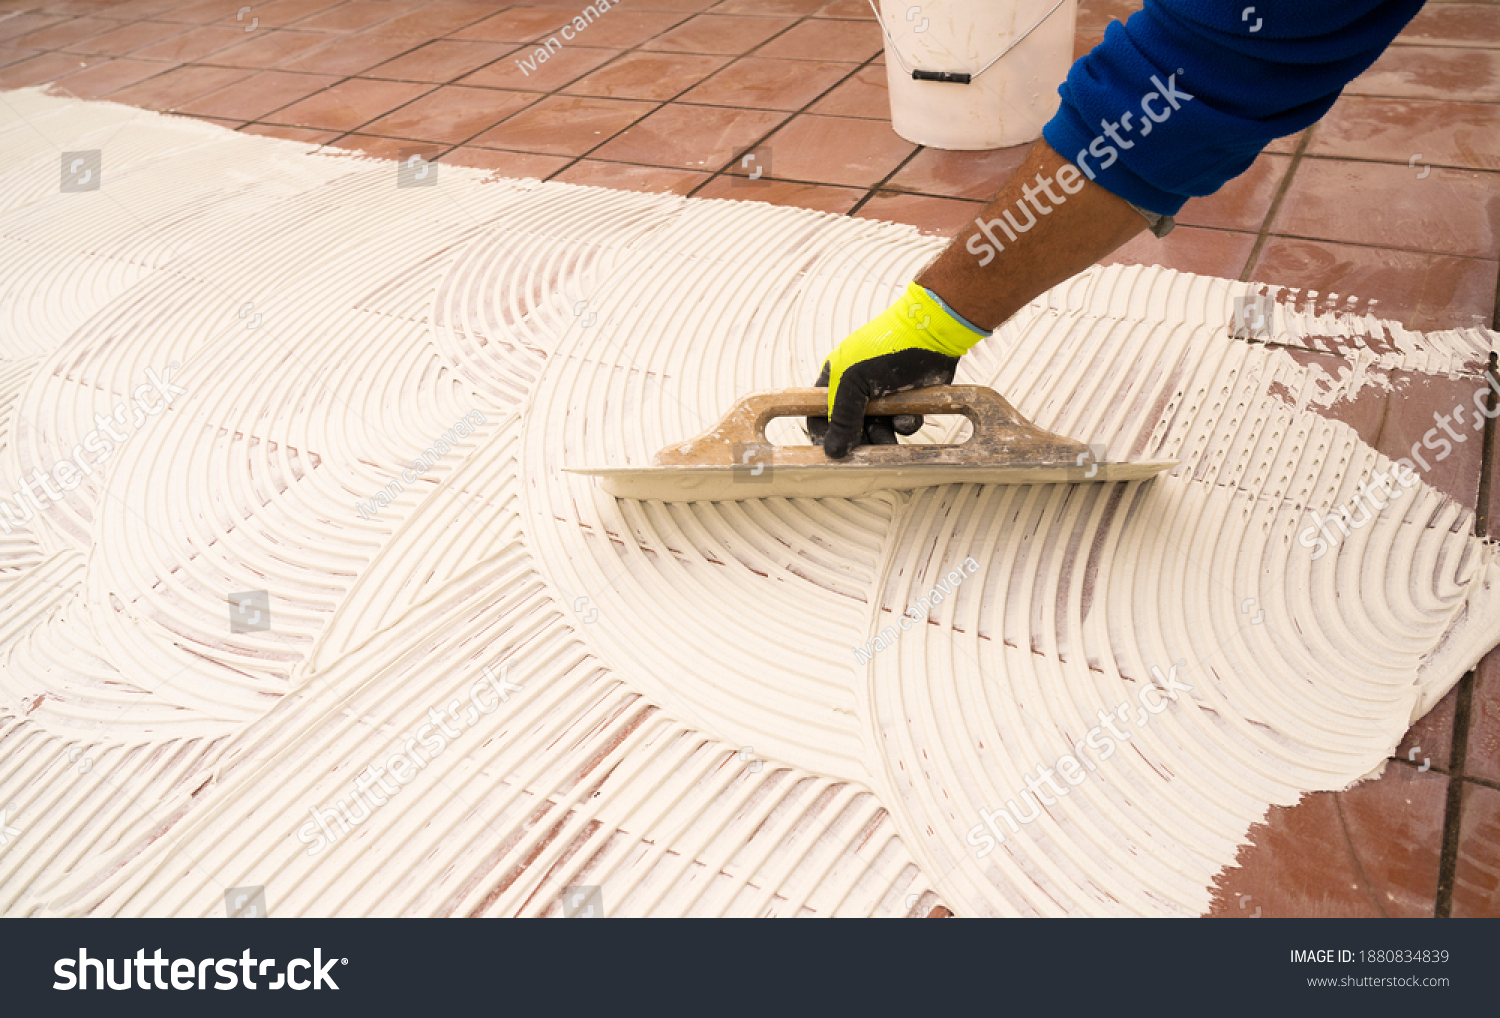 worker applying tile adhesive glue on the floor	 #1880834839